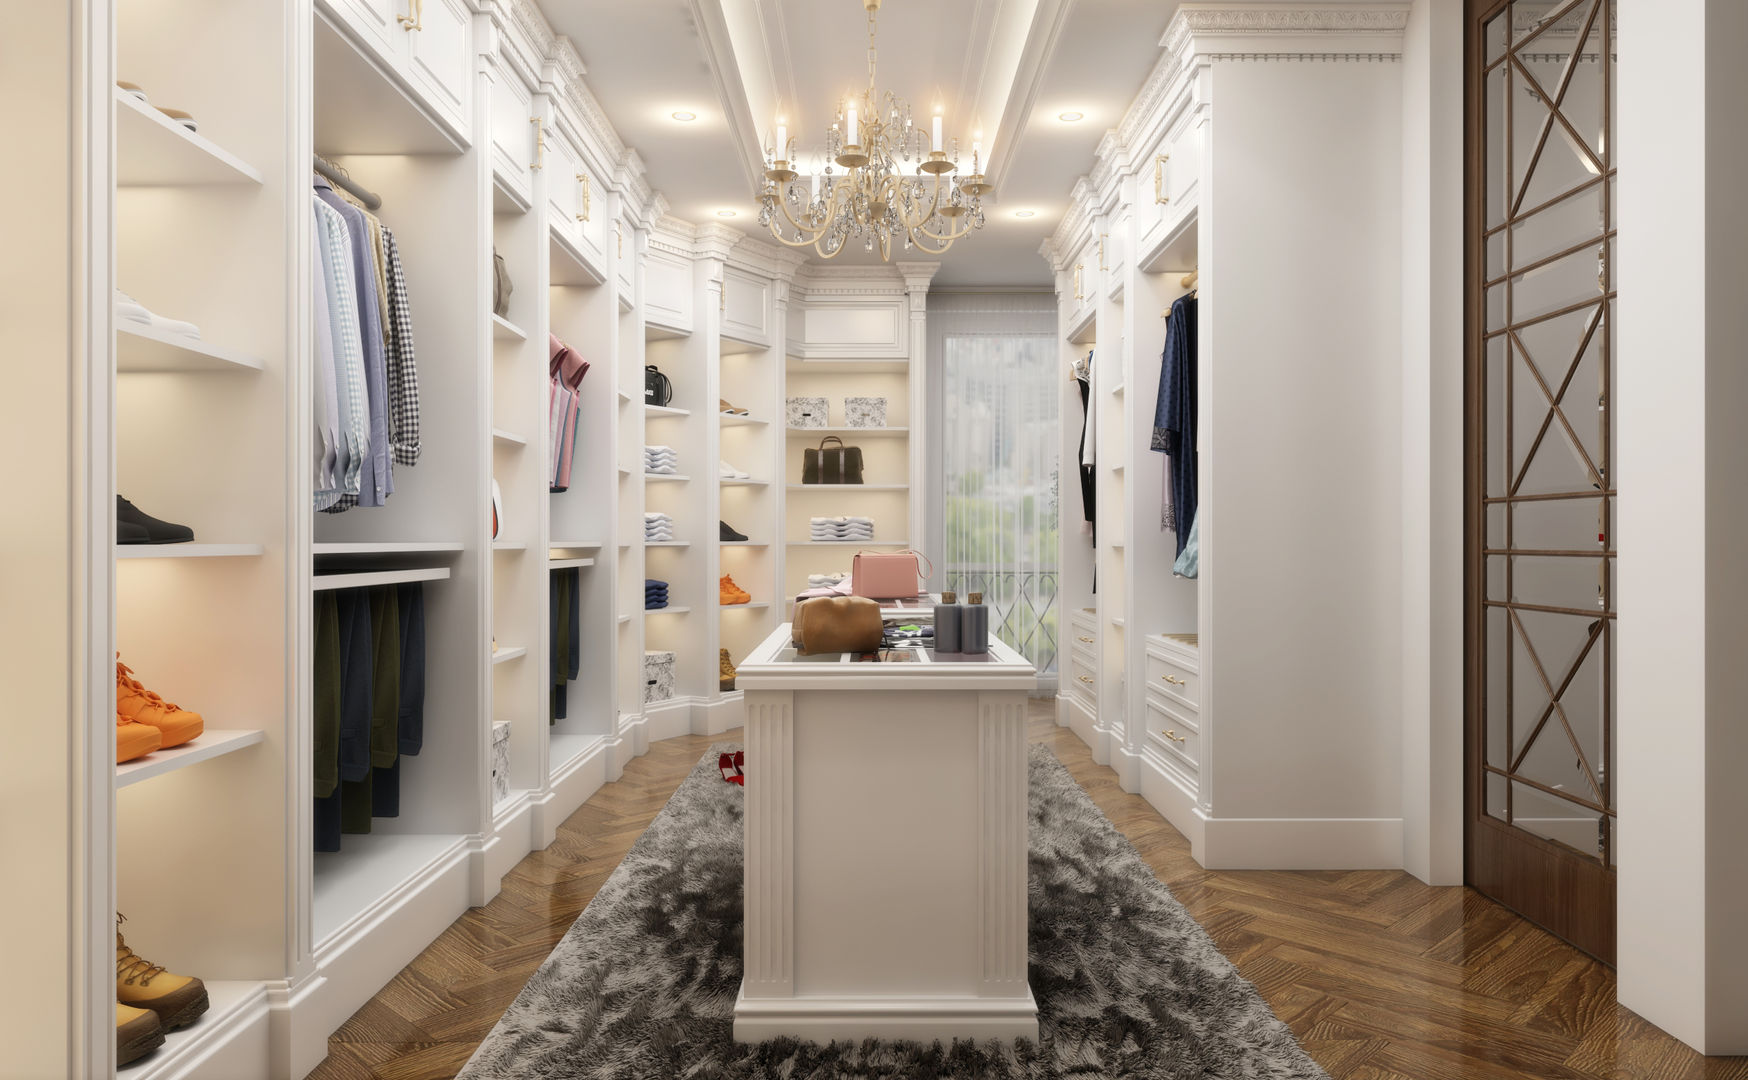 Dressing Room Sia Moore Archıtecture Interıor Desıgn Salas de estilo clásico